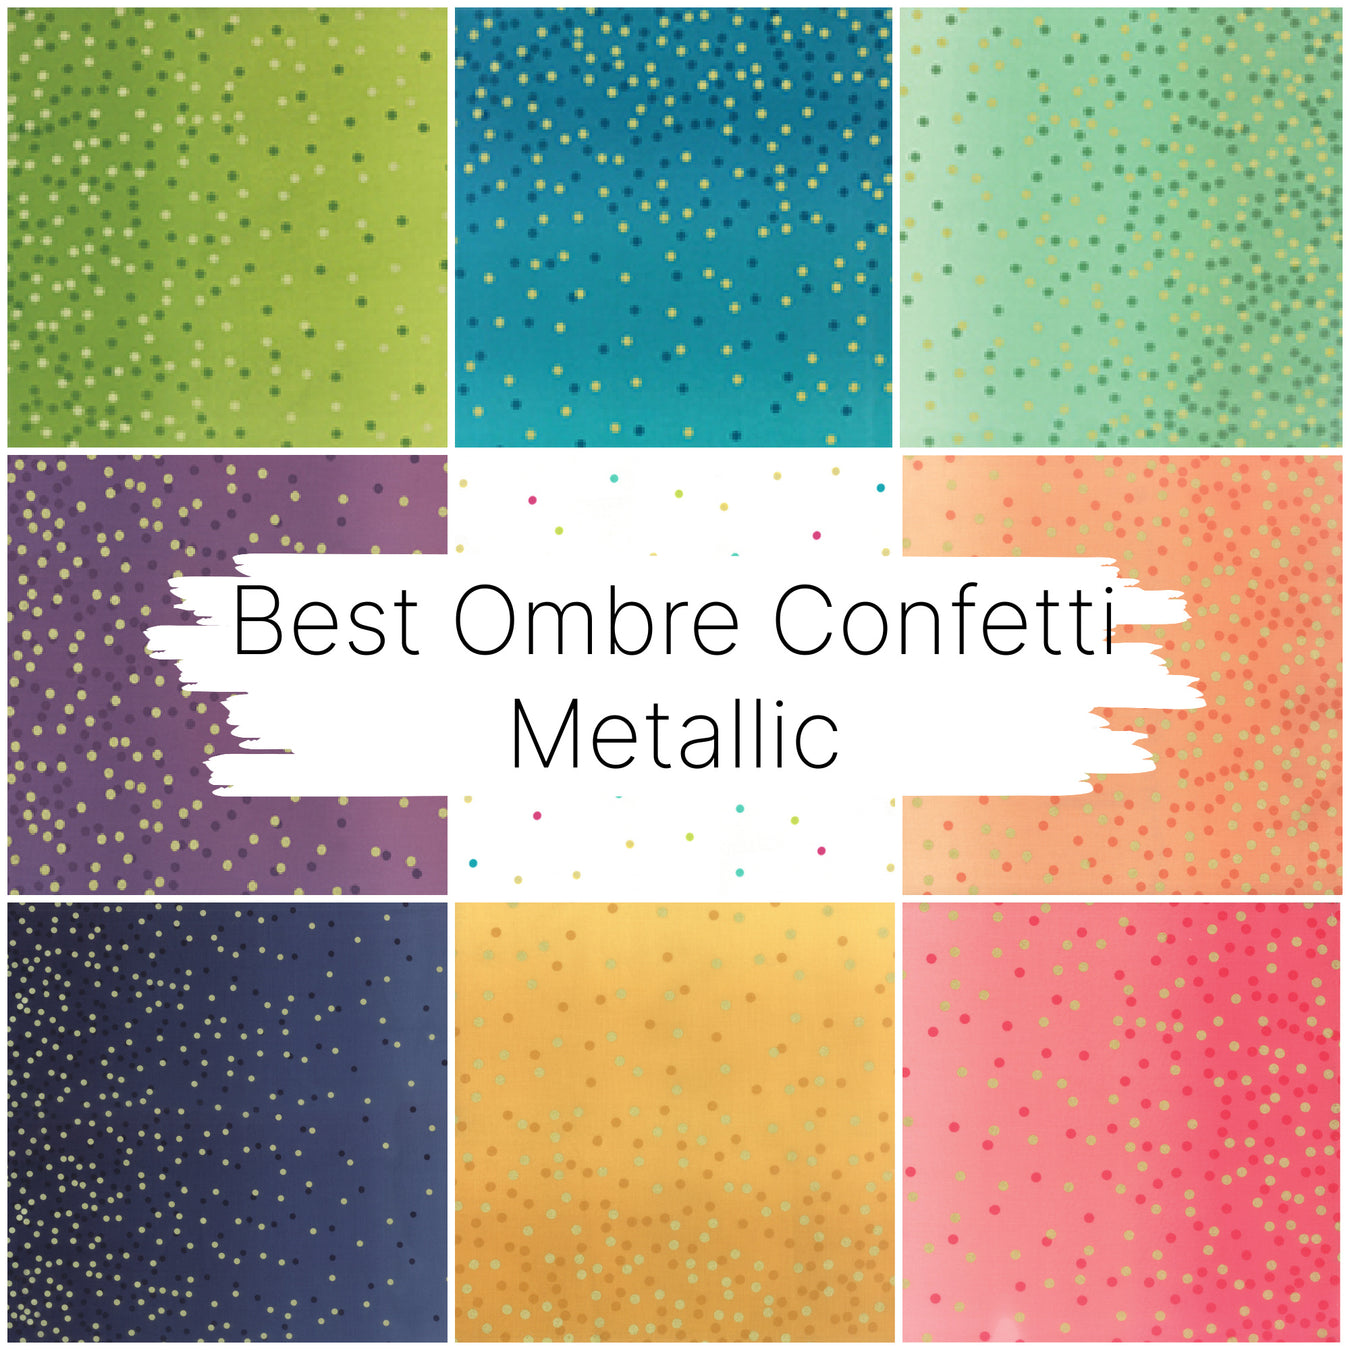 Best Ombre Confetti Metallic